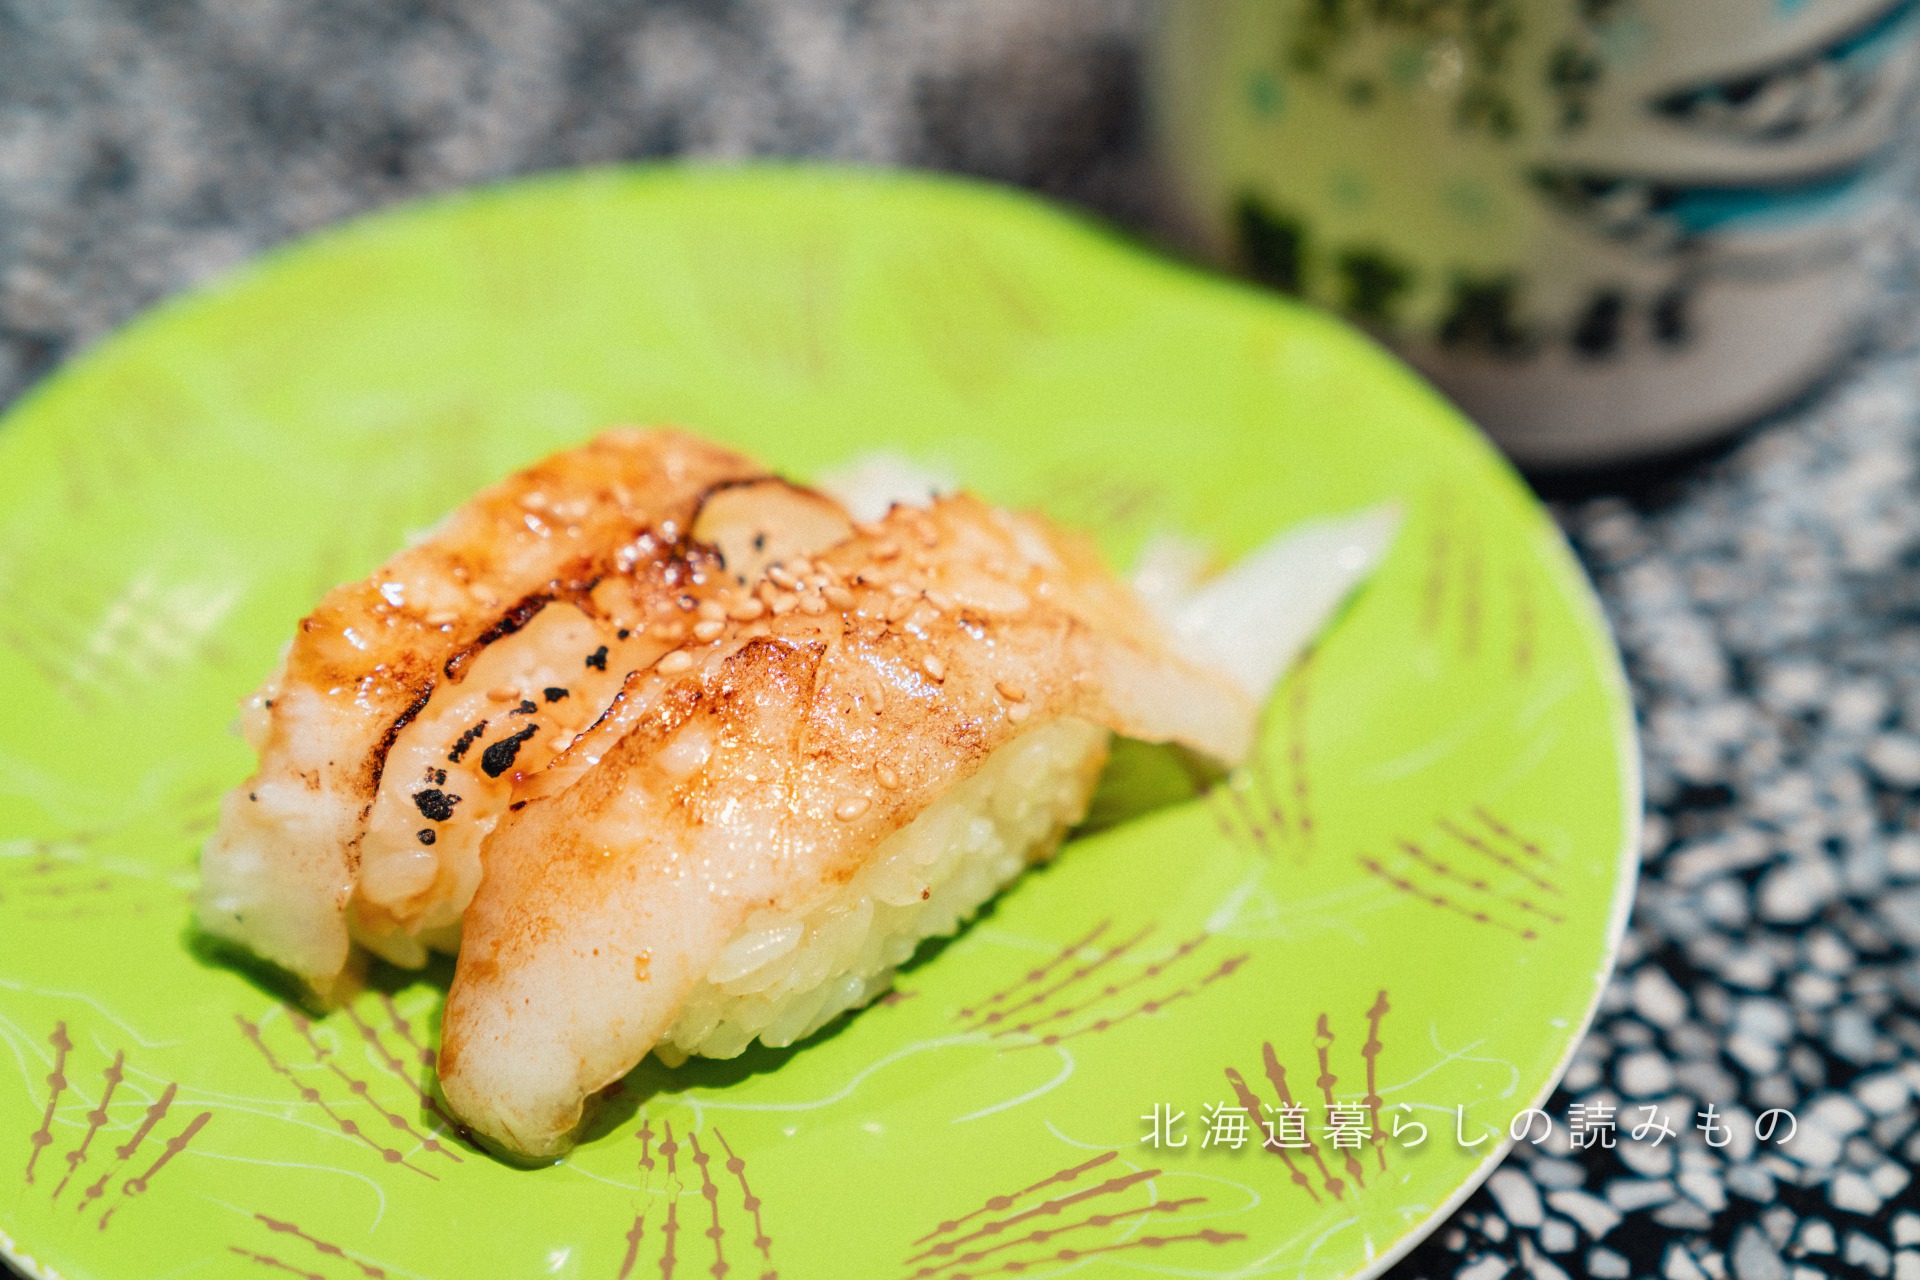 迴轉壽司根室花丸的菜單上的「烤胸鰭和腹鰭燒焦的醬油」